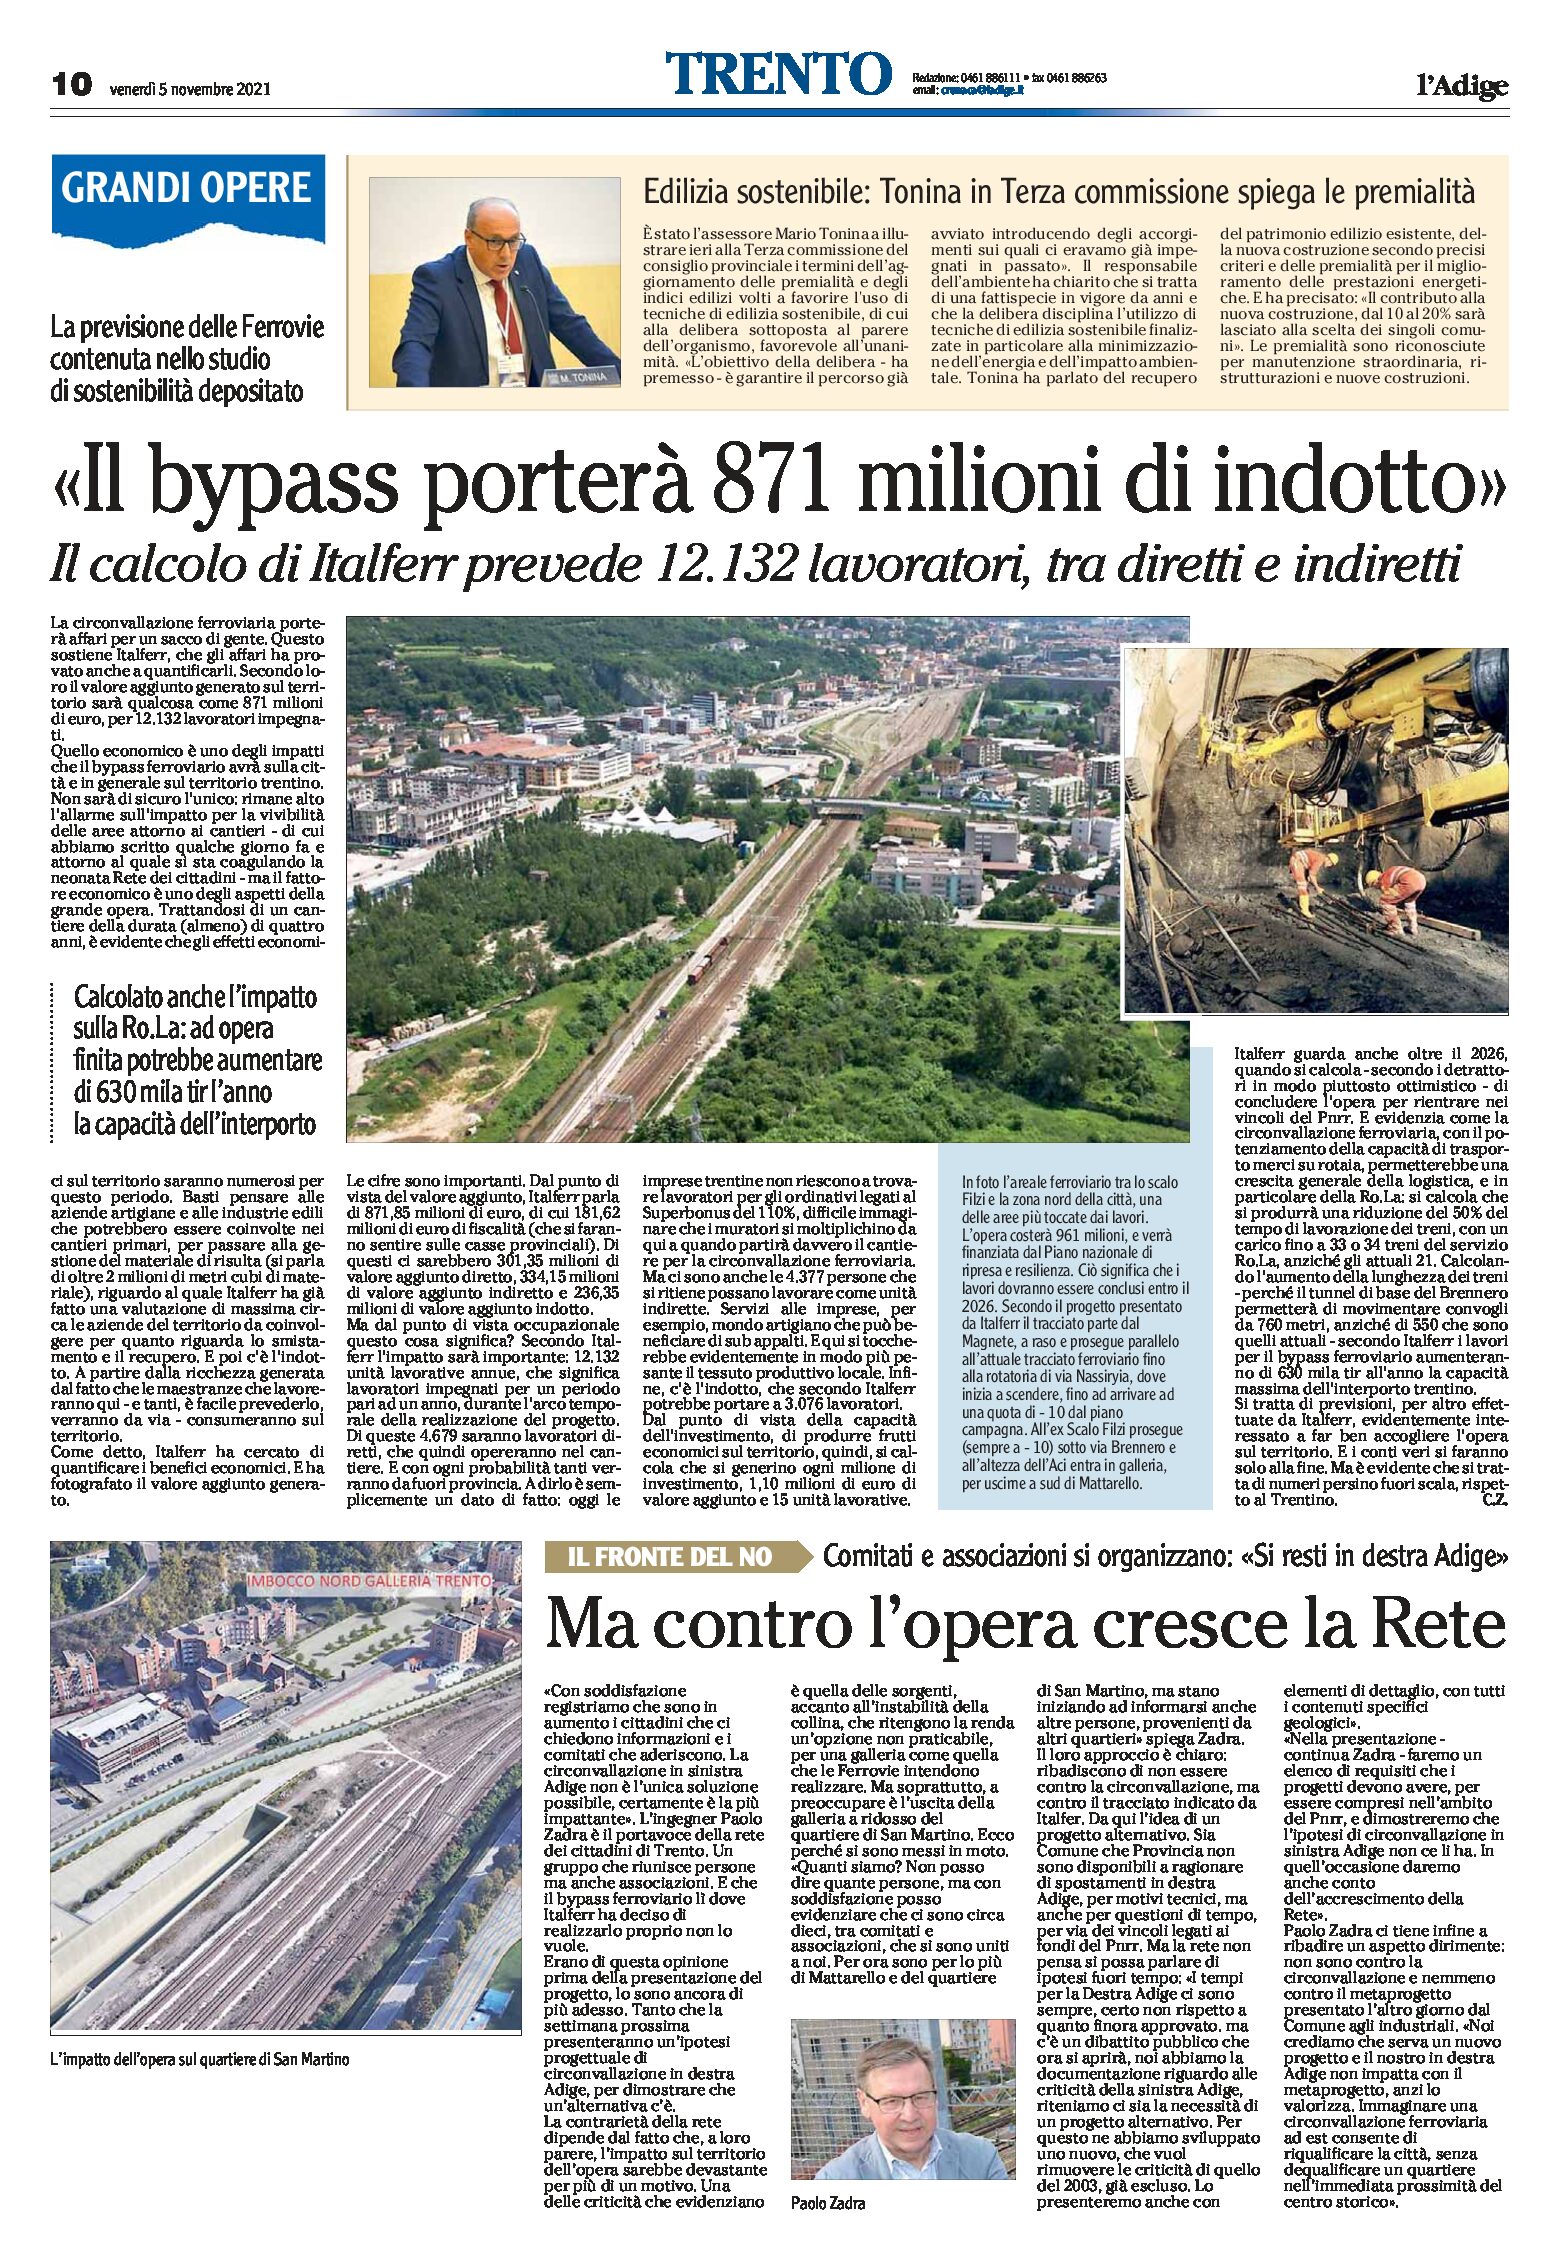 Trento, bypass: porterà 871 milioni di indotto